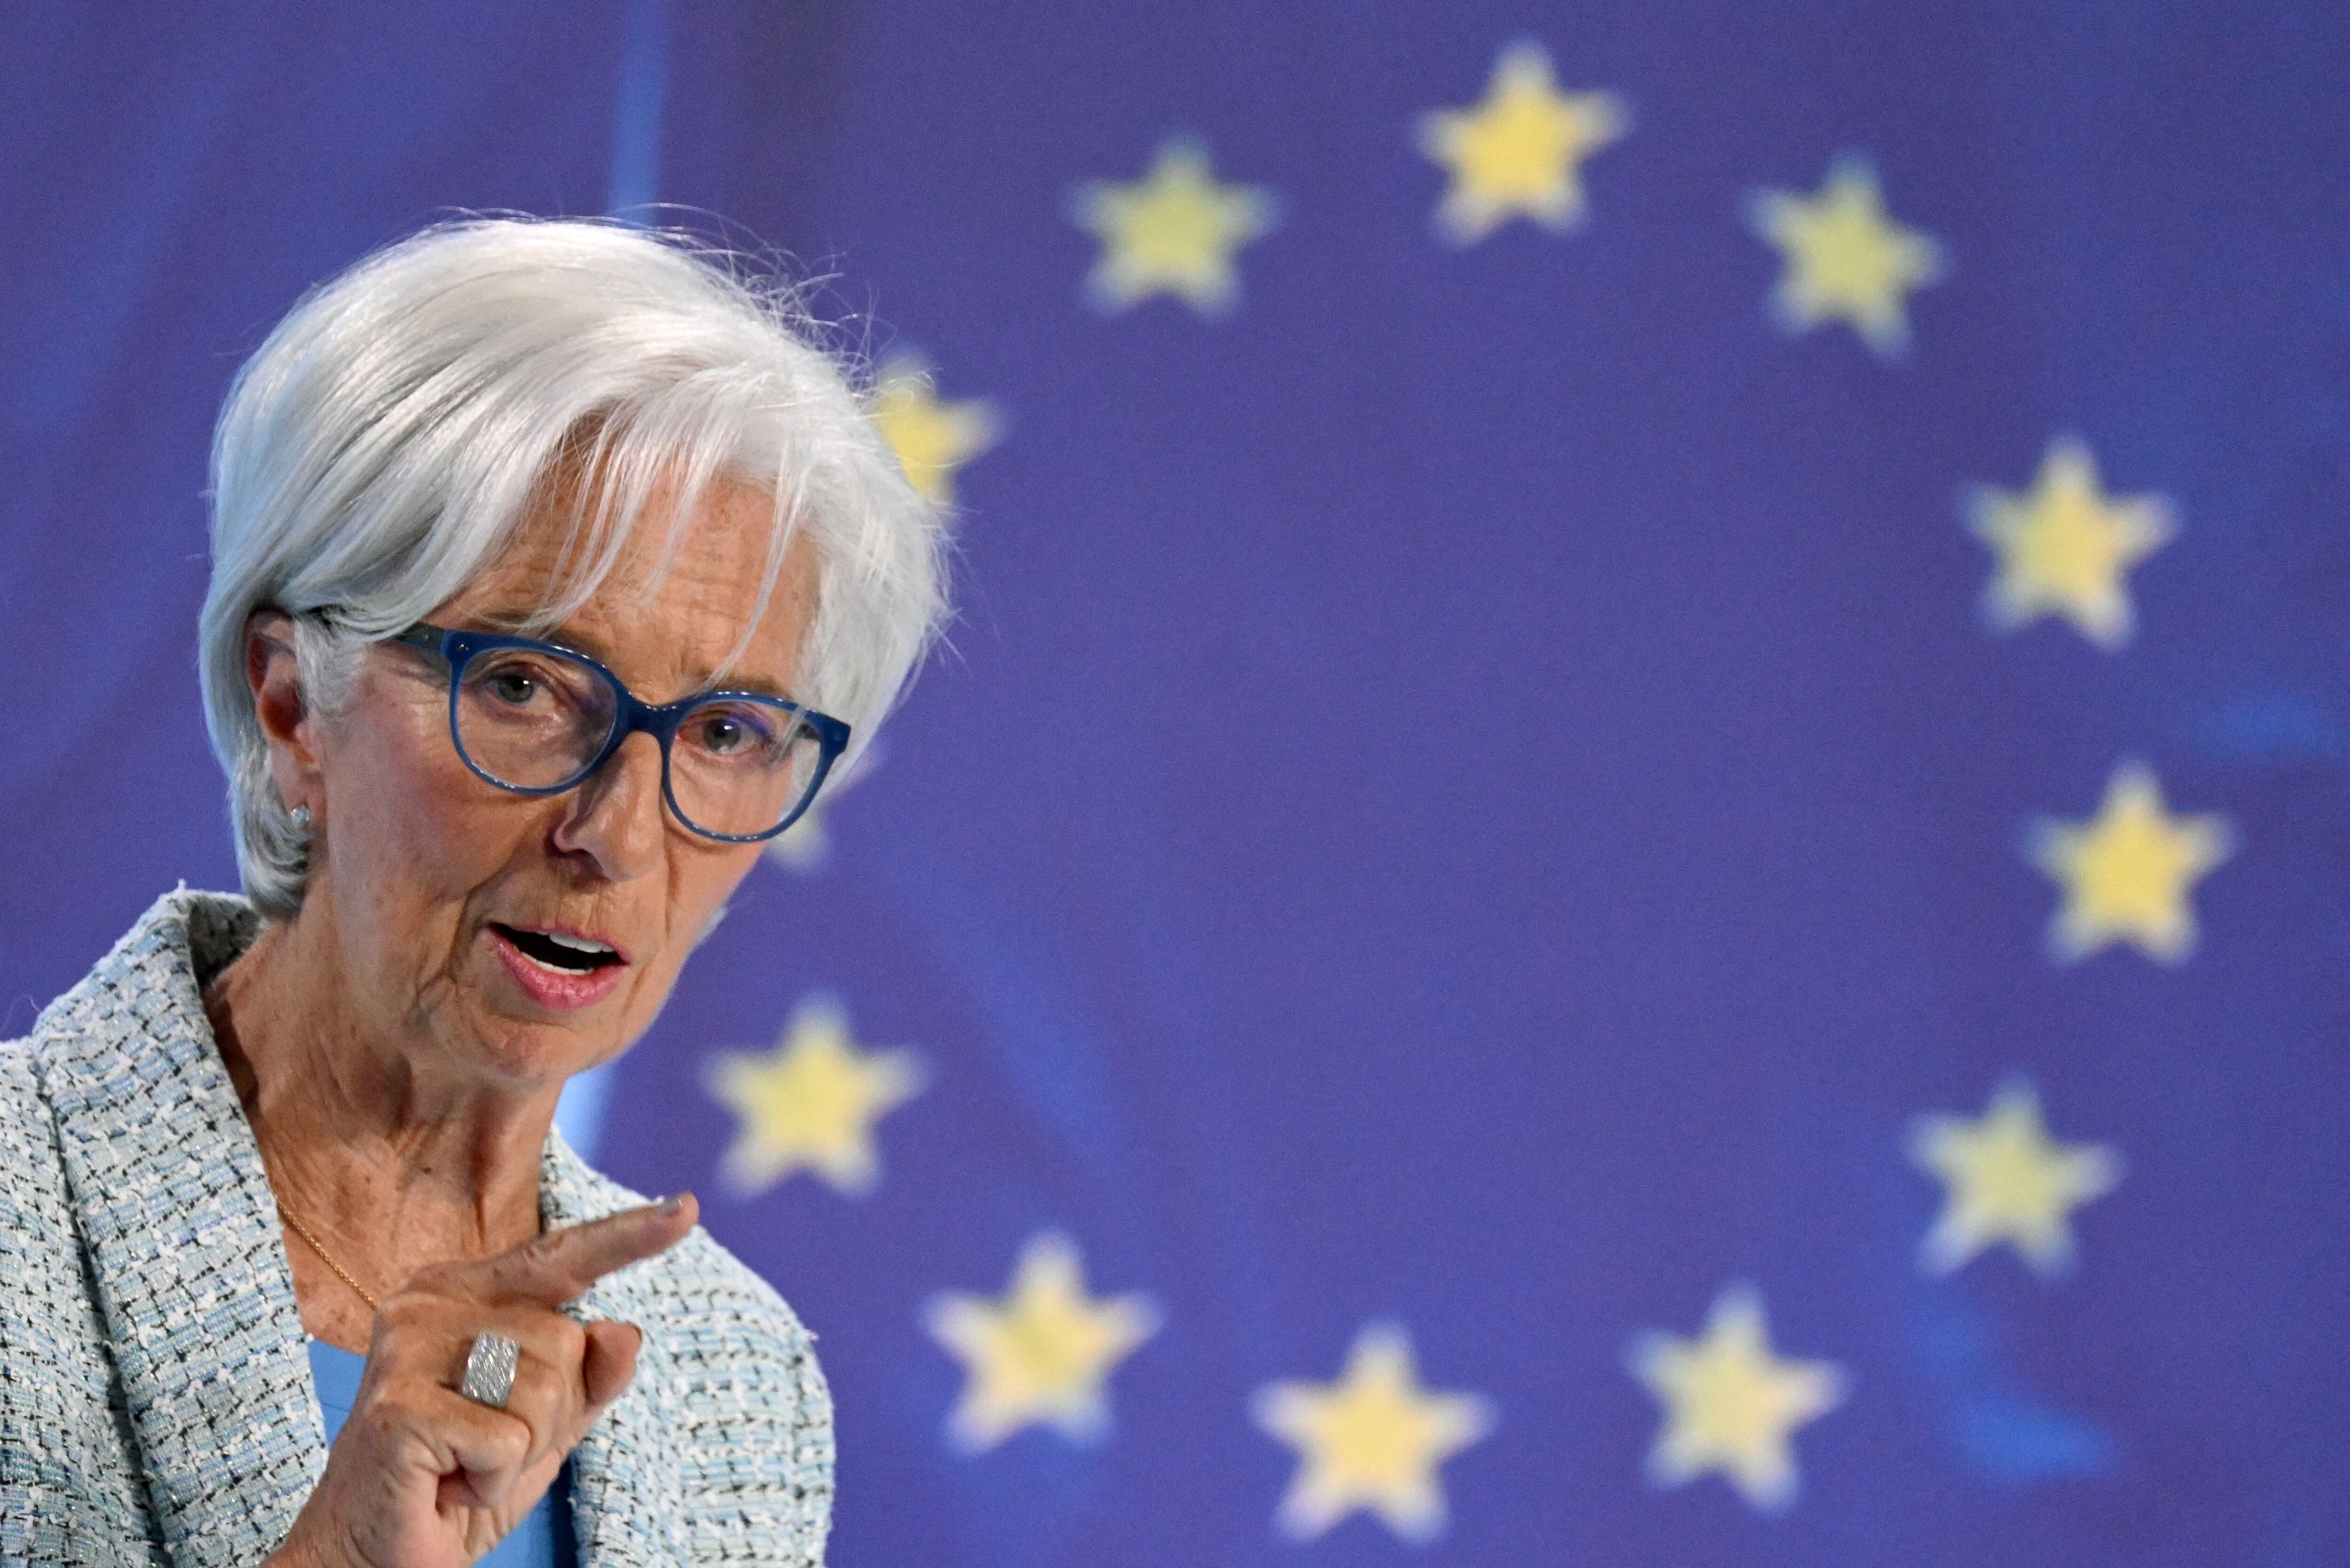 El Banco Central Europeo hizo su primer recorte de las tasas de interés desde 2019, pero dio pocas pistas sobre su próximo movimiento. En la fotografía, Christine Lagarde, presidenta del BCE, durante una conferencia de prensa el 6 de junio.

